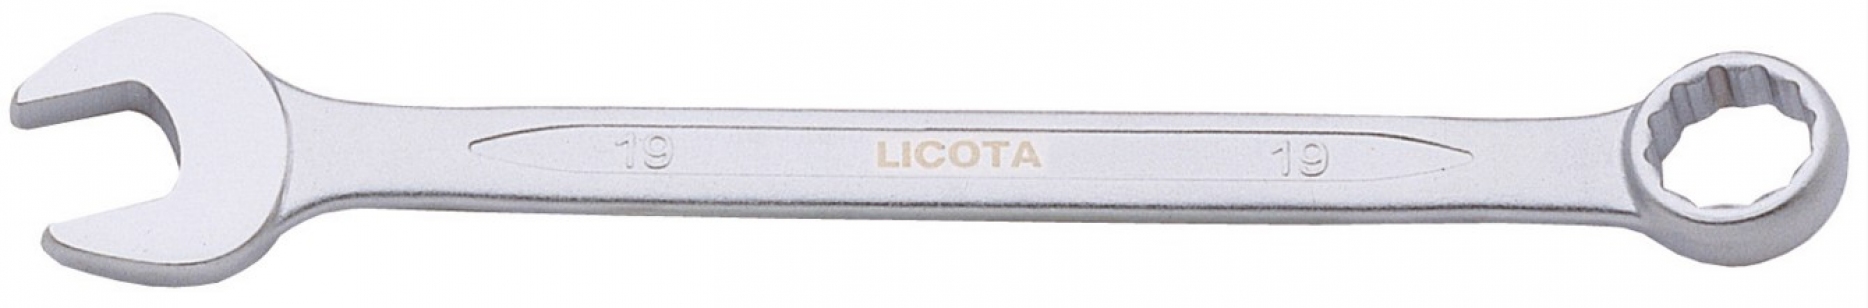 Ключ комбинированный Licota 19 мм (AWT-ERS19)